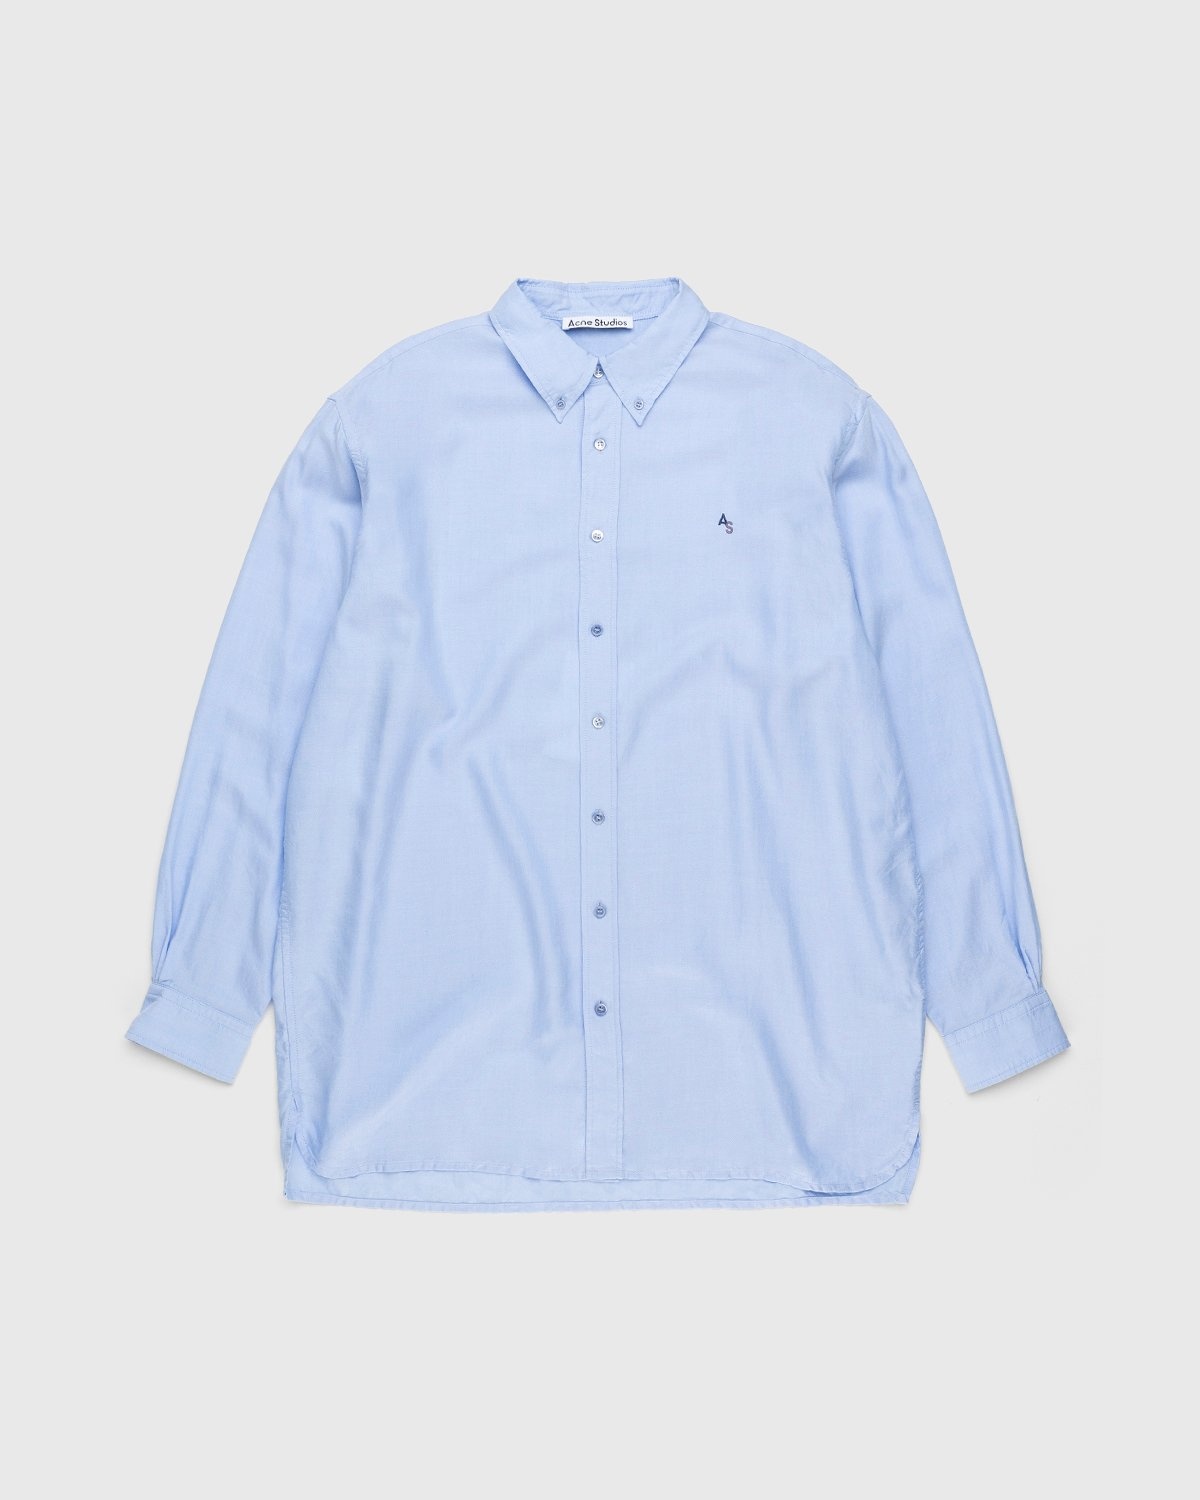 Acne Studios – Classic Monogram Button-Up Shirt Light Blue